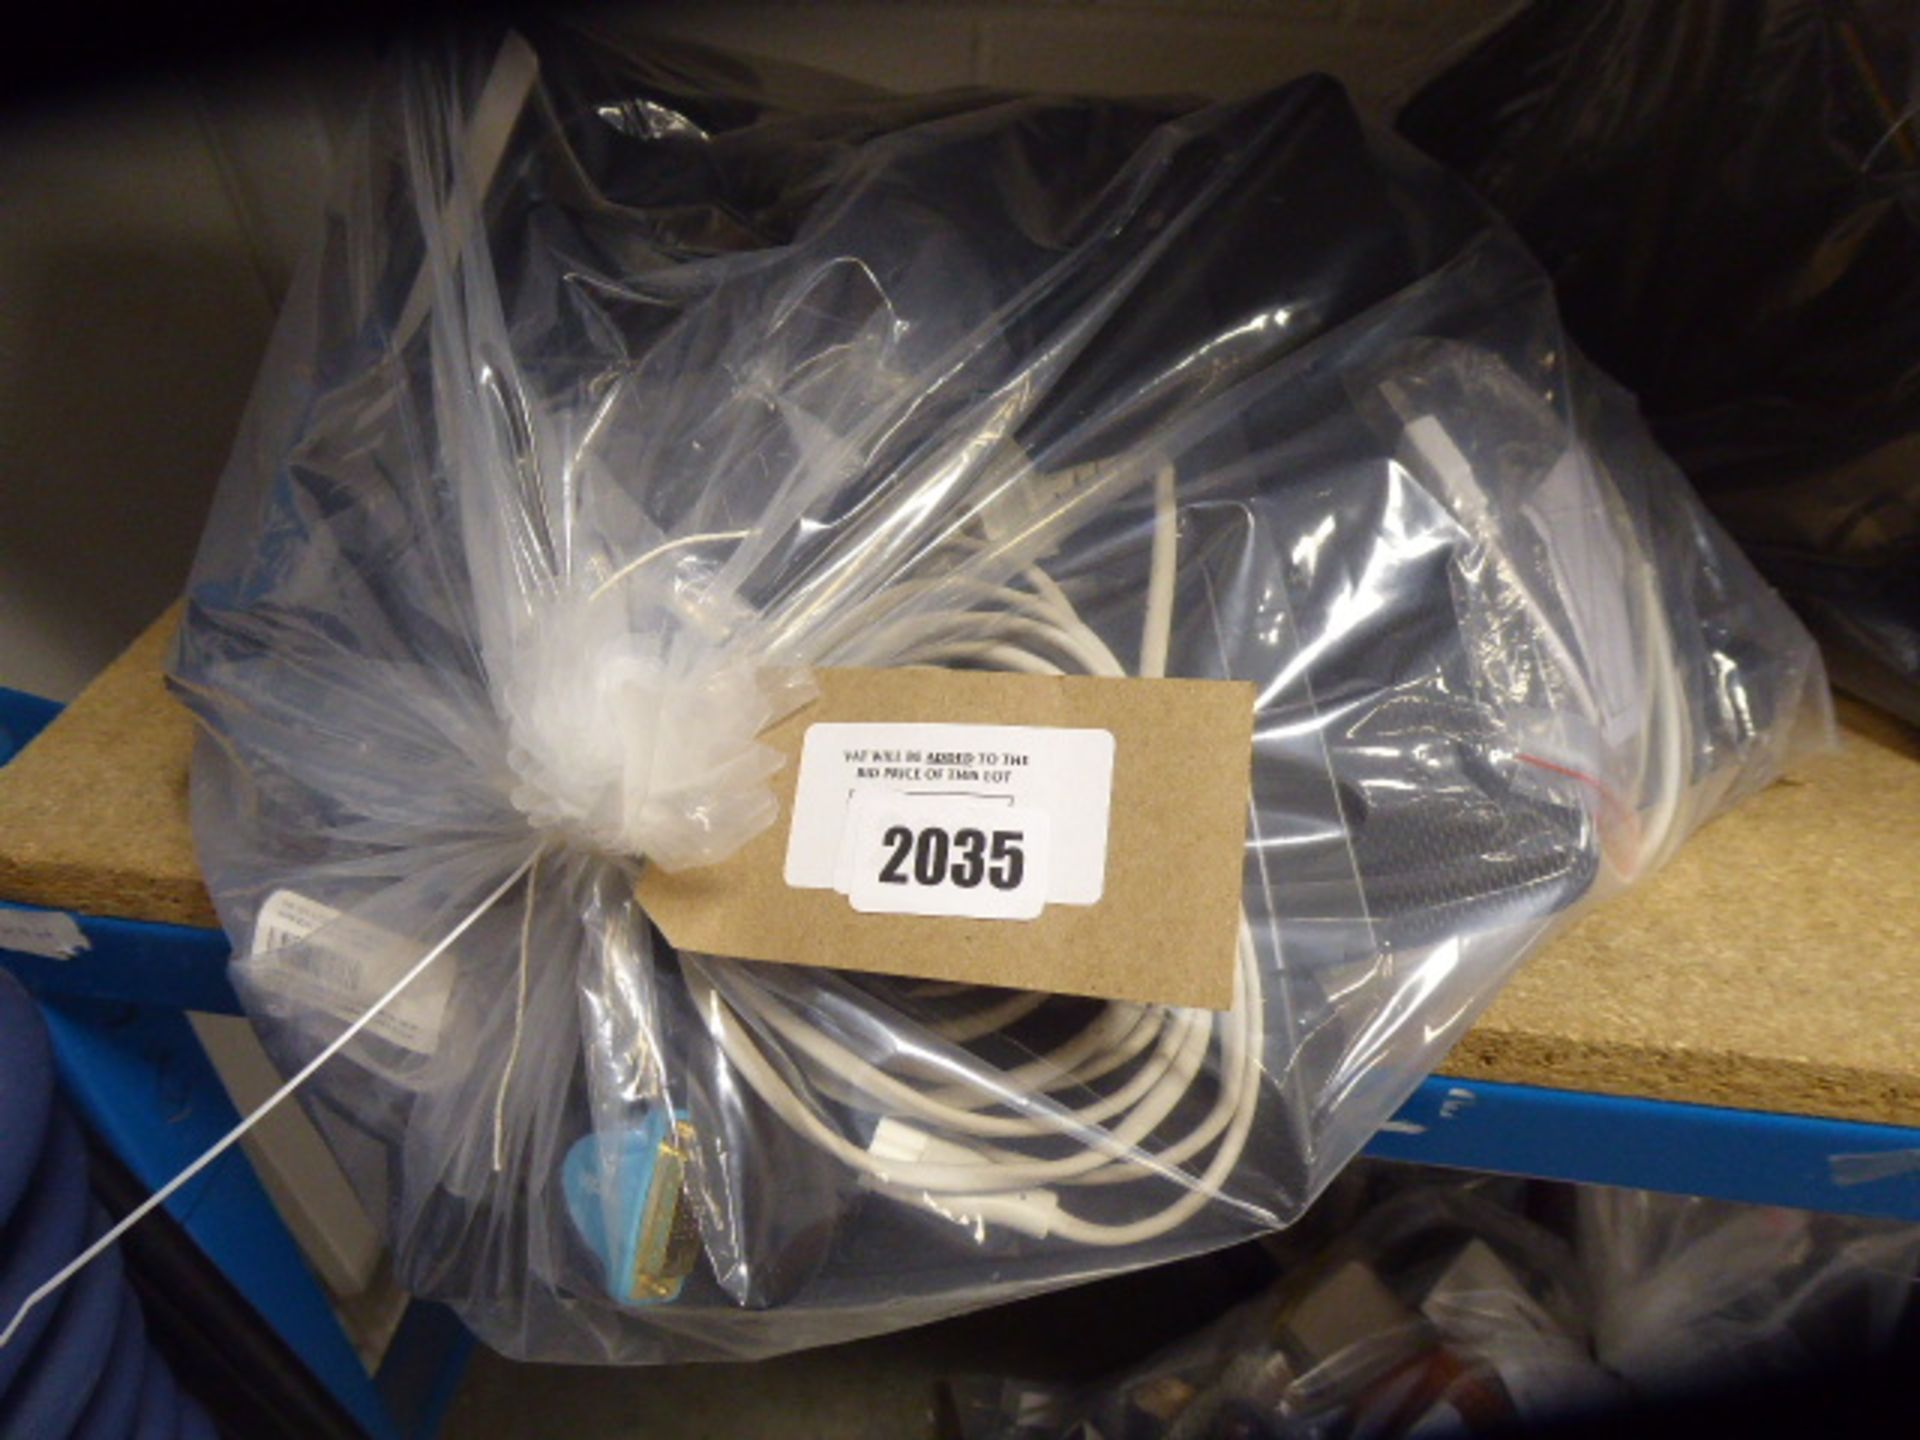 2697 Bag of misc. cables, adaptors, IT equipment etc